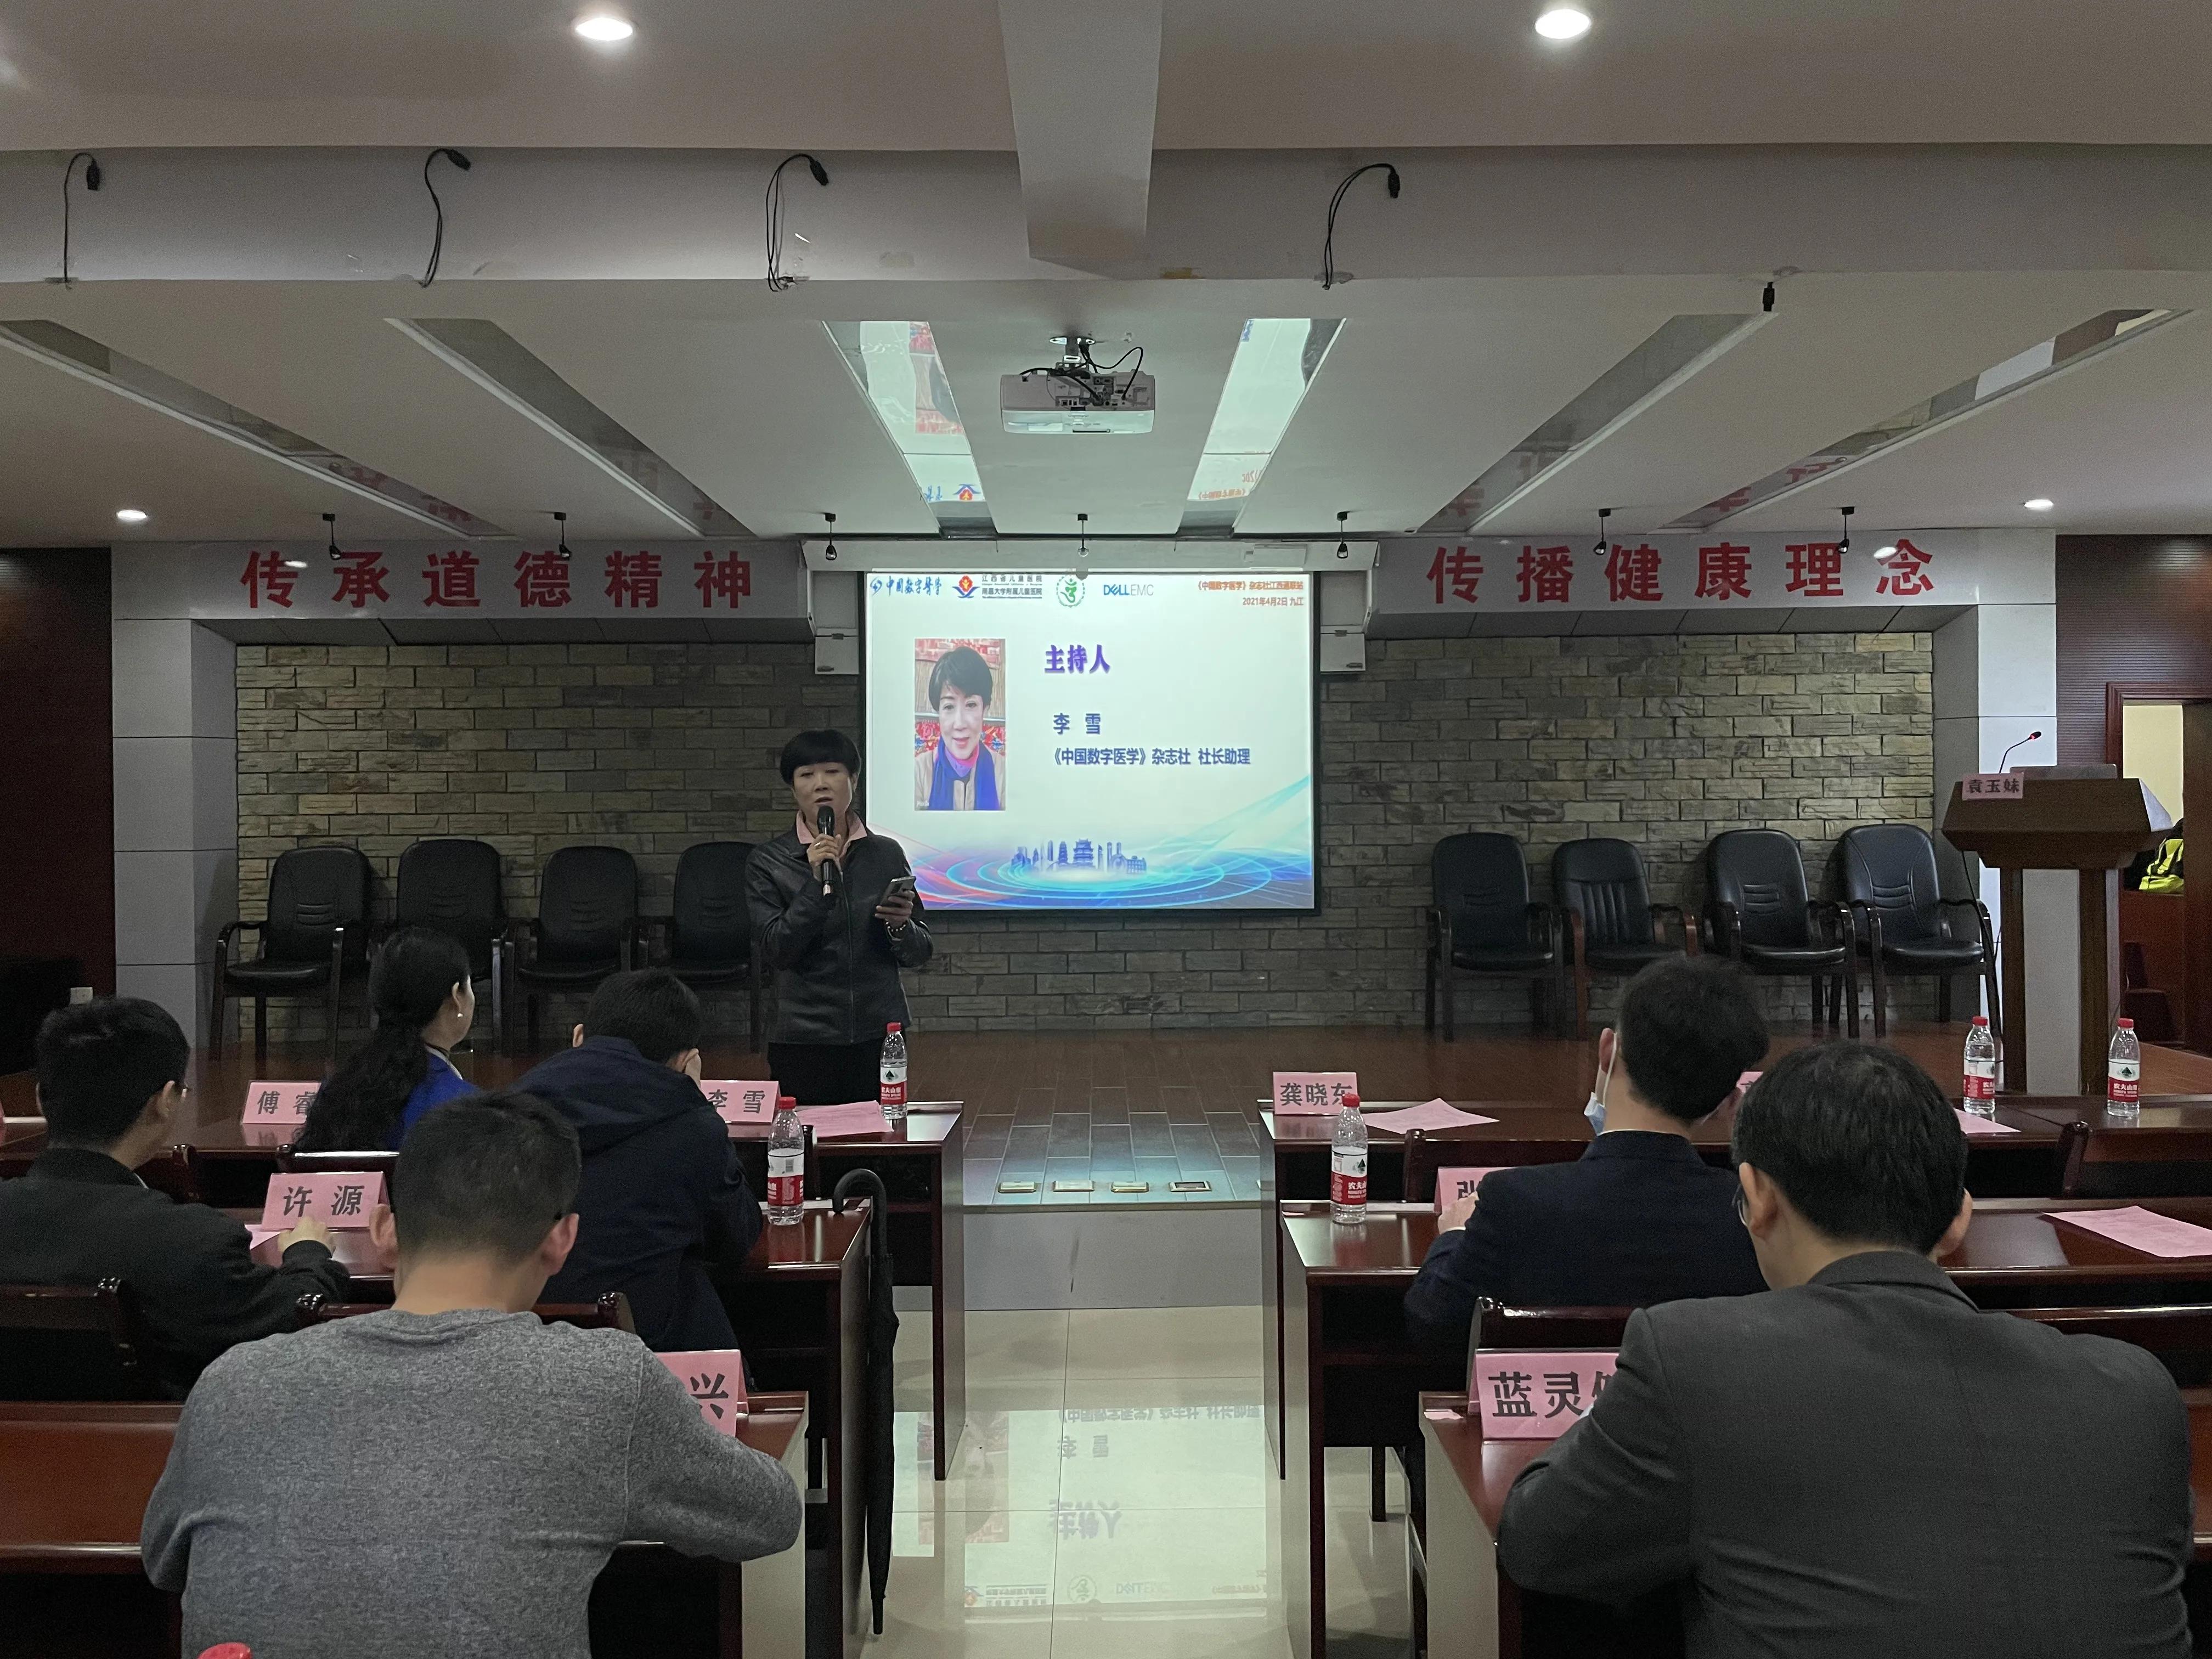 江西省儿童医院承办「疫情防控常态化时期的医院信息化建设」主题研讨会